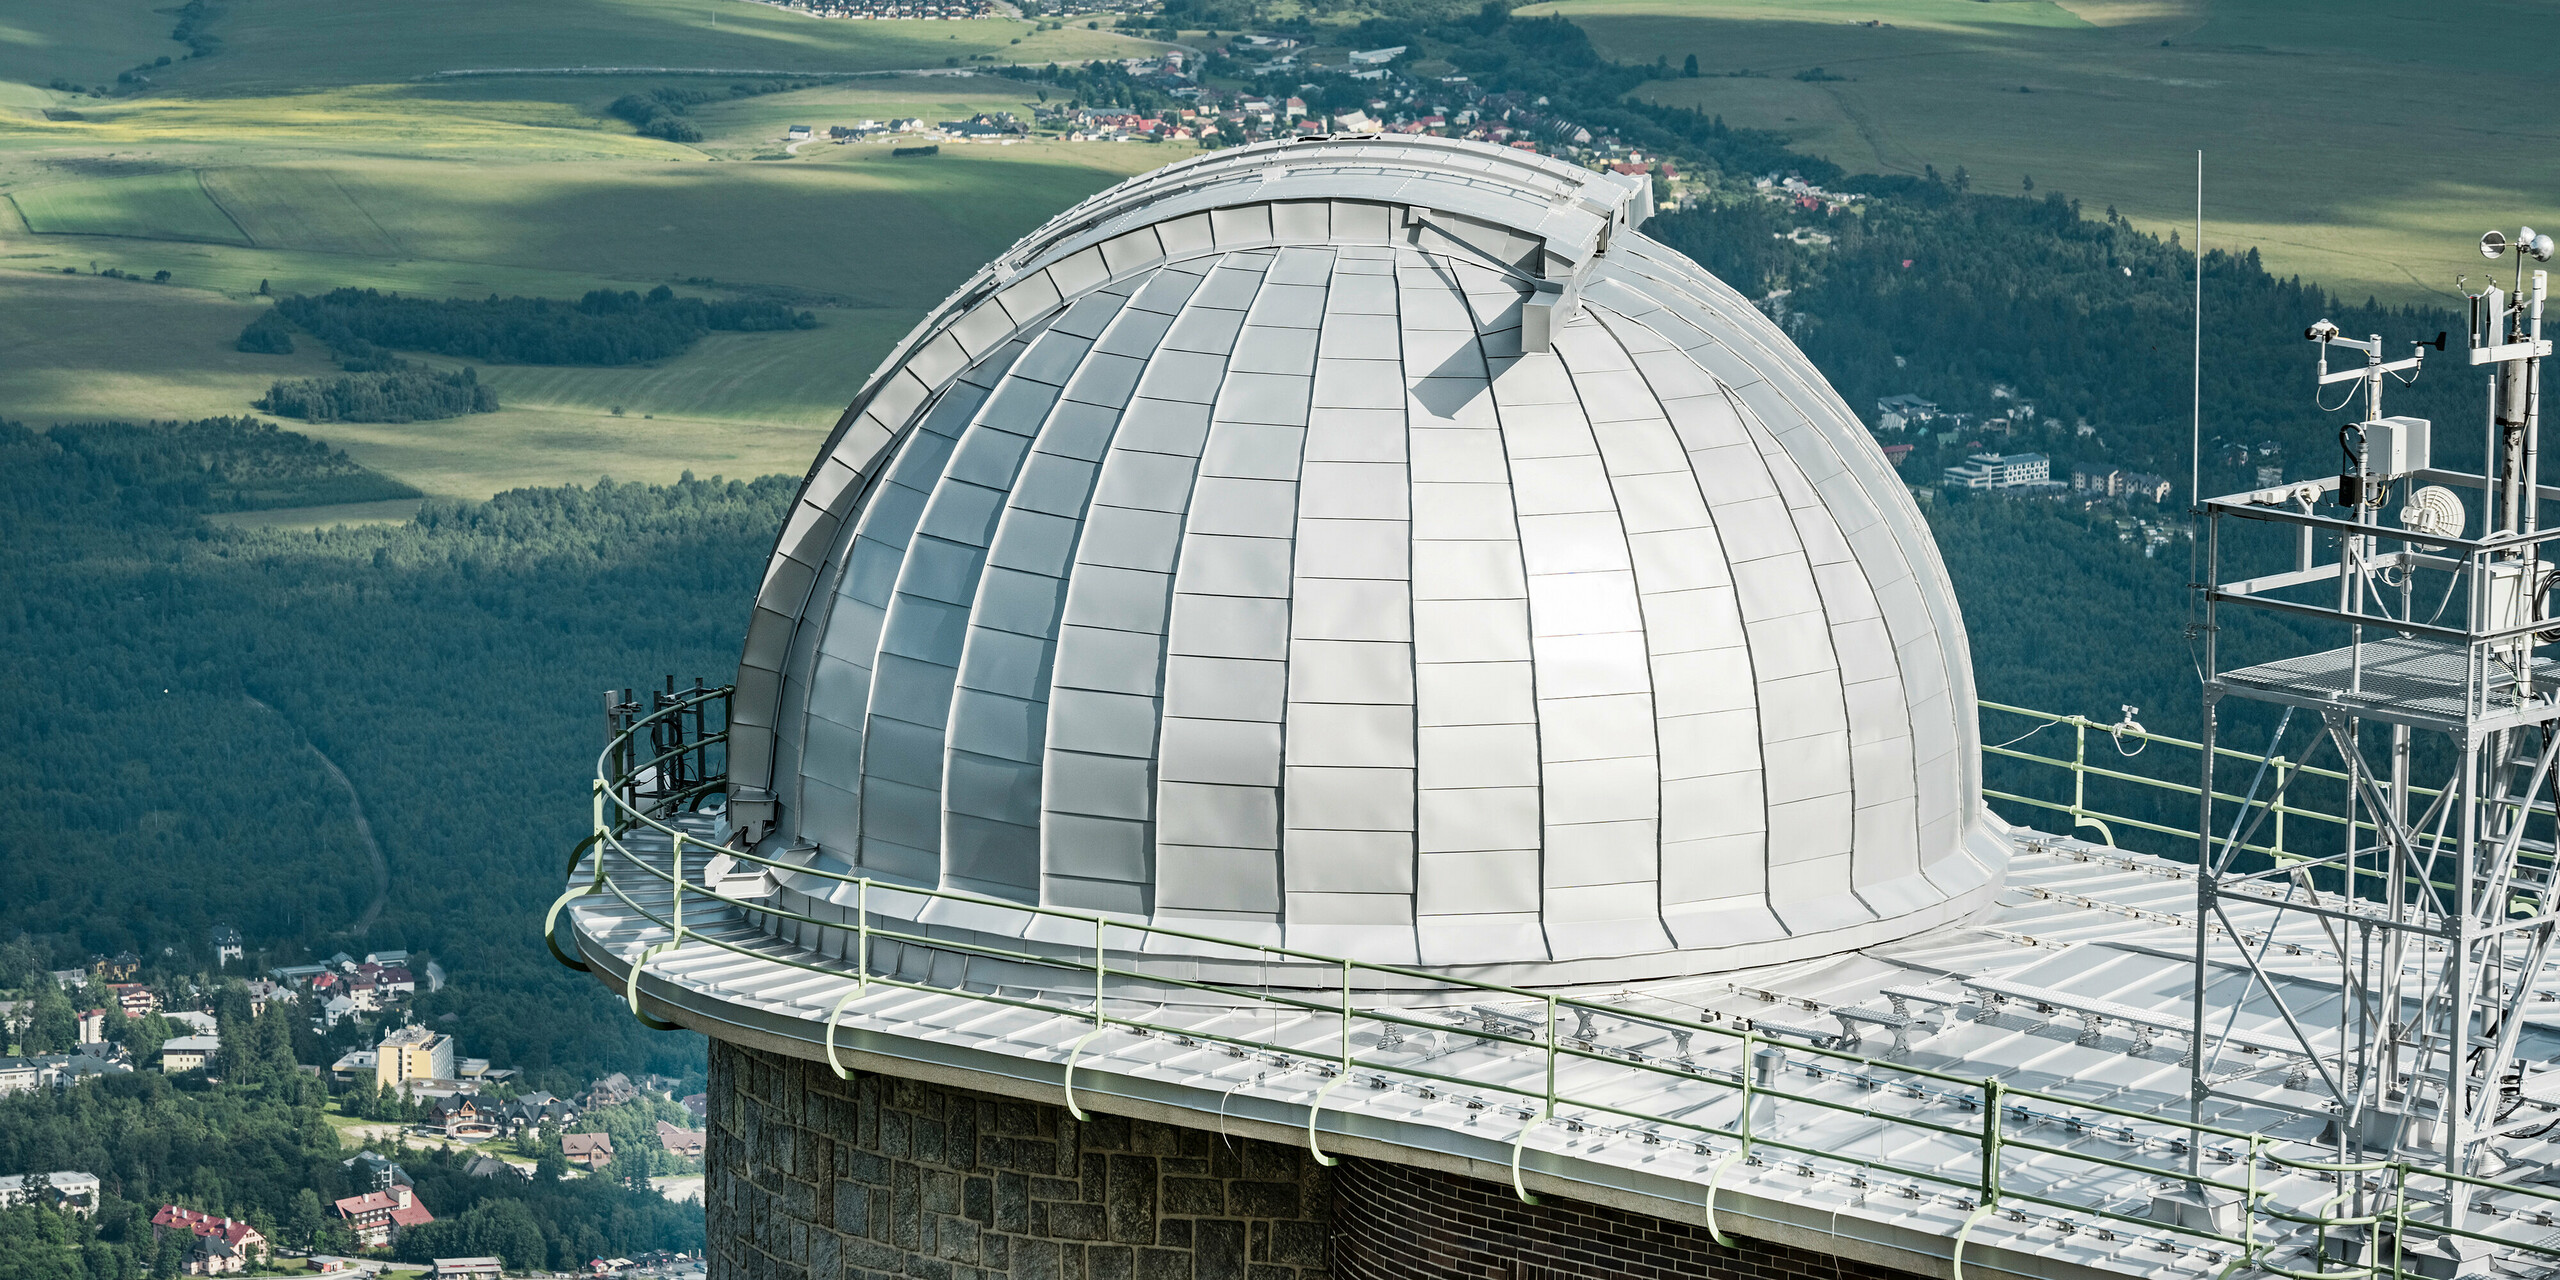 Panoramablick auf die imposante Kuppel der Sternwarte Skalnaty Pleso, meisterhaft eingebettet in die malerische Landschaft der Hohen Tatra. Die silbermetallic PREFALZ Aluminiumverkleidung schimmert im Kontrast zum üppigen Grün der umliegenden Wälder und den sanften Konturen der ländlichen Landschaft. Dieses architektonische Juwel, das auf einer Höhe von 1.783 Metern über dem Meeresspiegel ruht, ist nicht nur ein Wahrzeichen für astronomische Entdeckungen seit 1943, sondern auch ein Zeugnis für die Langlebigkeit und Umweltverträglichkeit von PREFA Aluminiumprodukten, die durch eine 40-jährige Garantie untermauert sind.